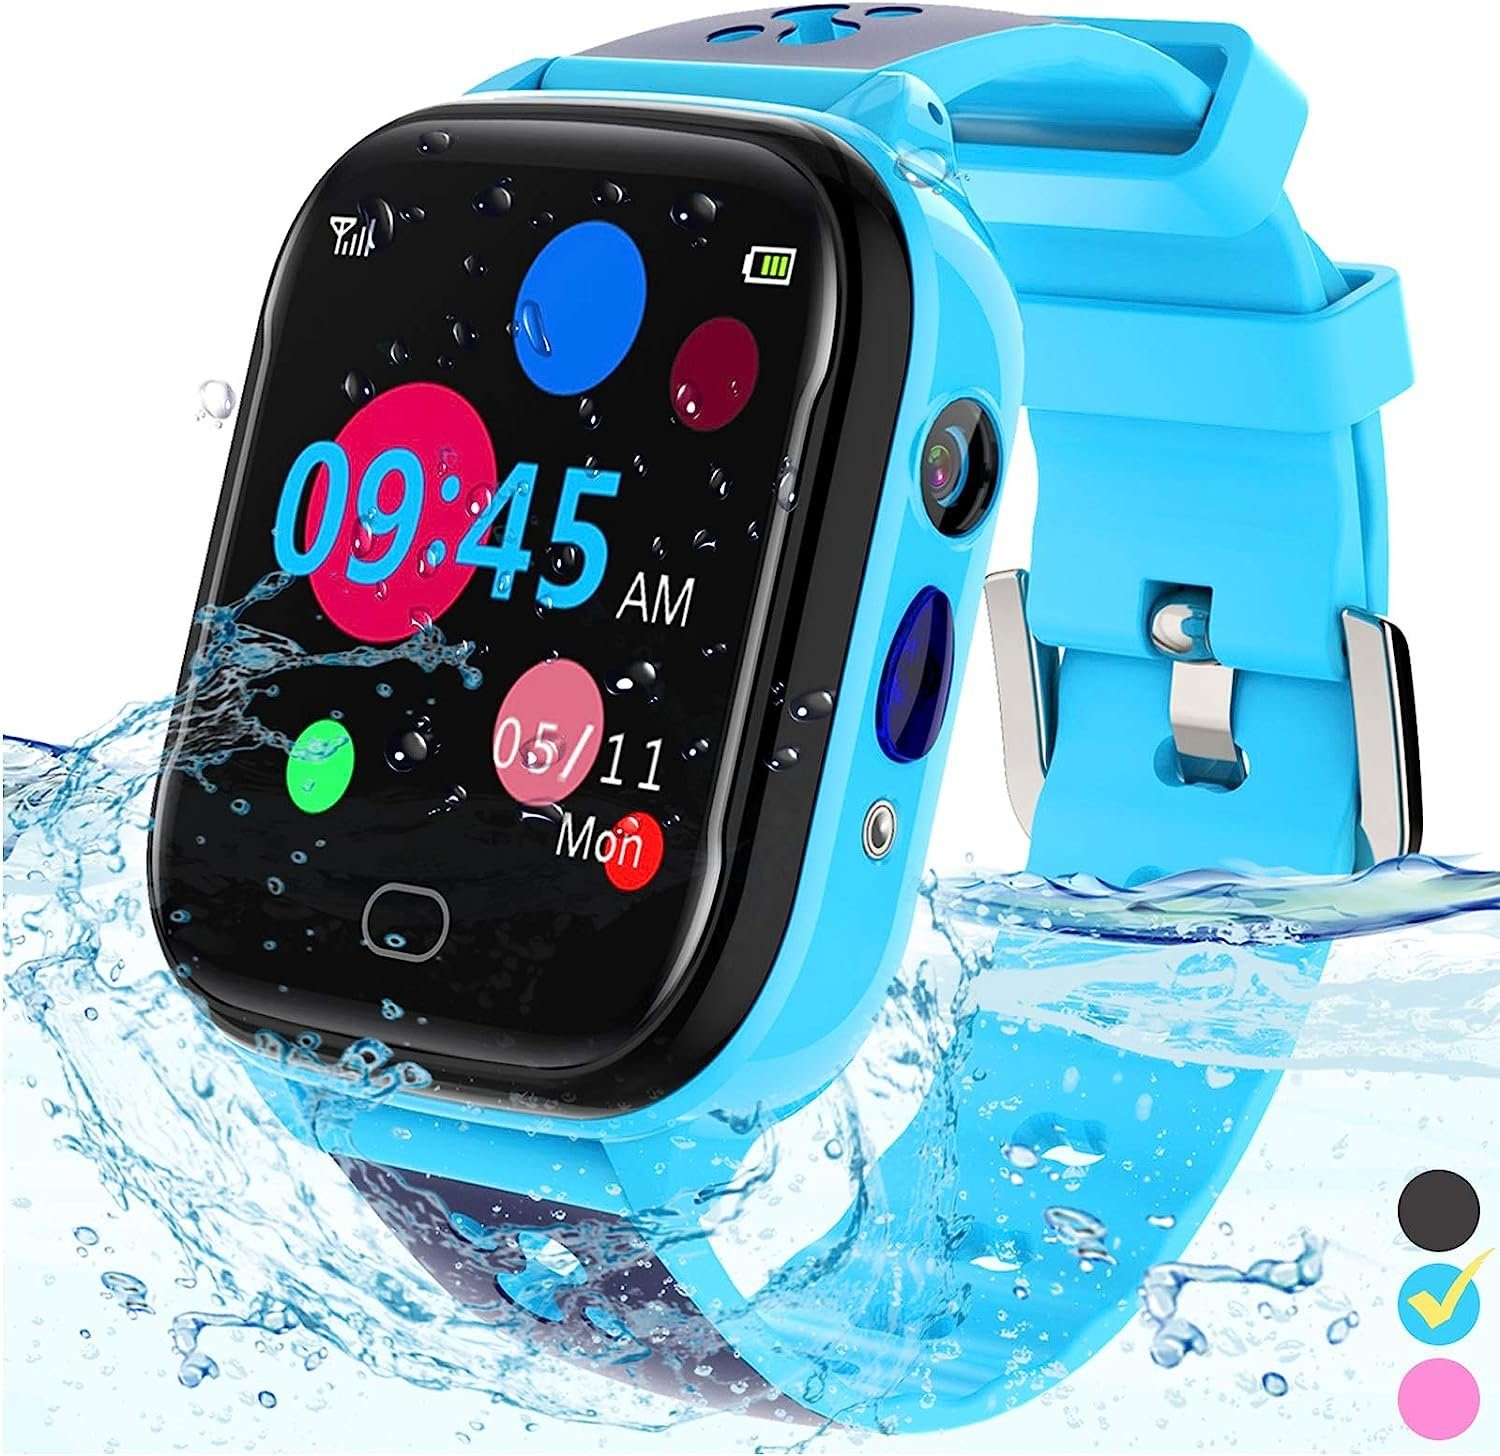 FRLONE für 3-13 Jahre Kinder Geburtstagsgeschenk mit IP67 wasserdichte Smartwatch (1.44 Zoll), mit Touchscreen 5 Spiele Kamera Alarm SOS Anruf – Digital Armbanduhr